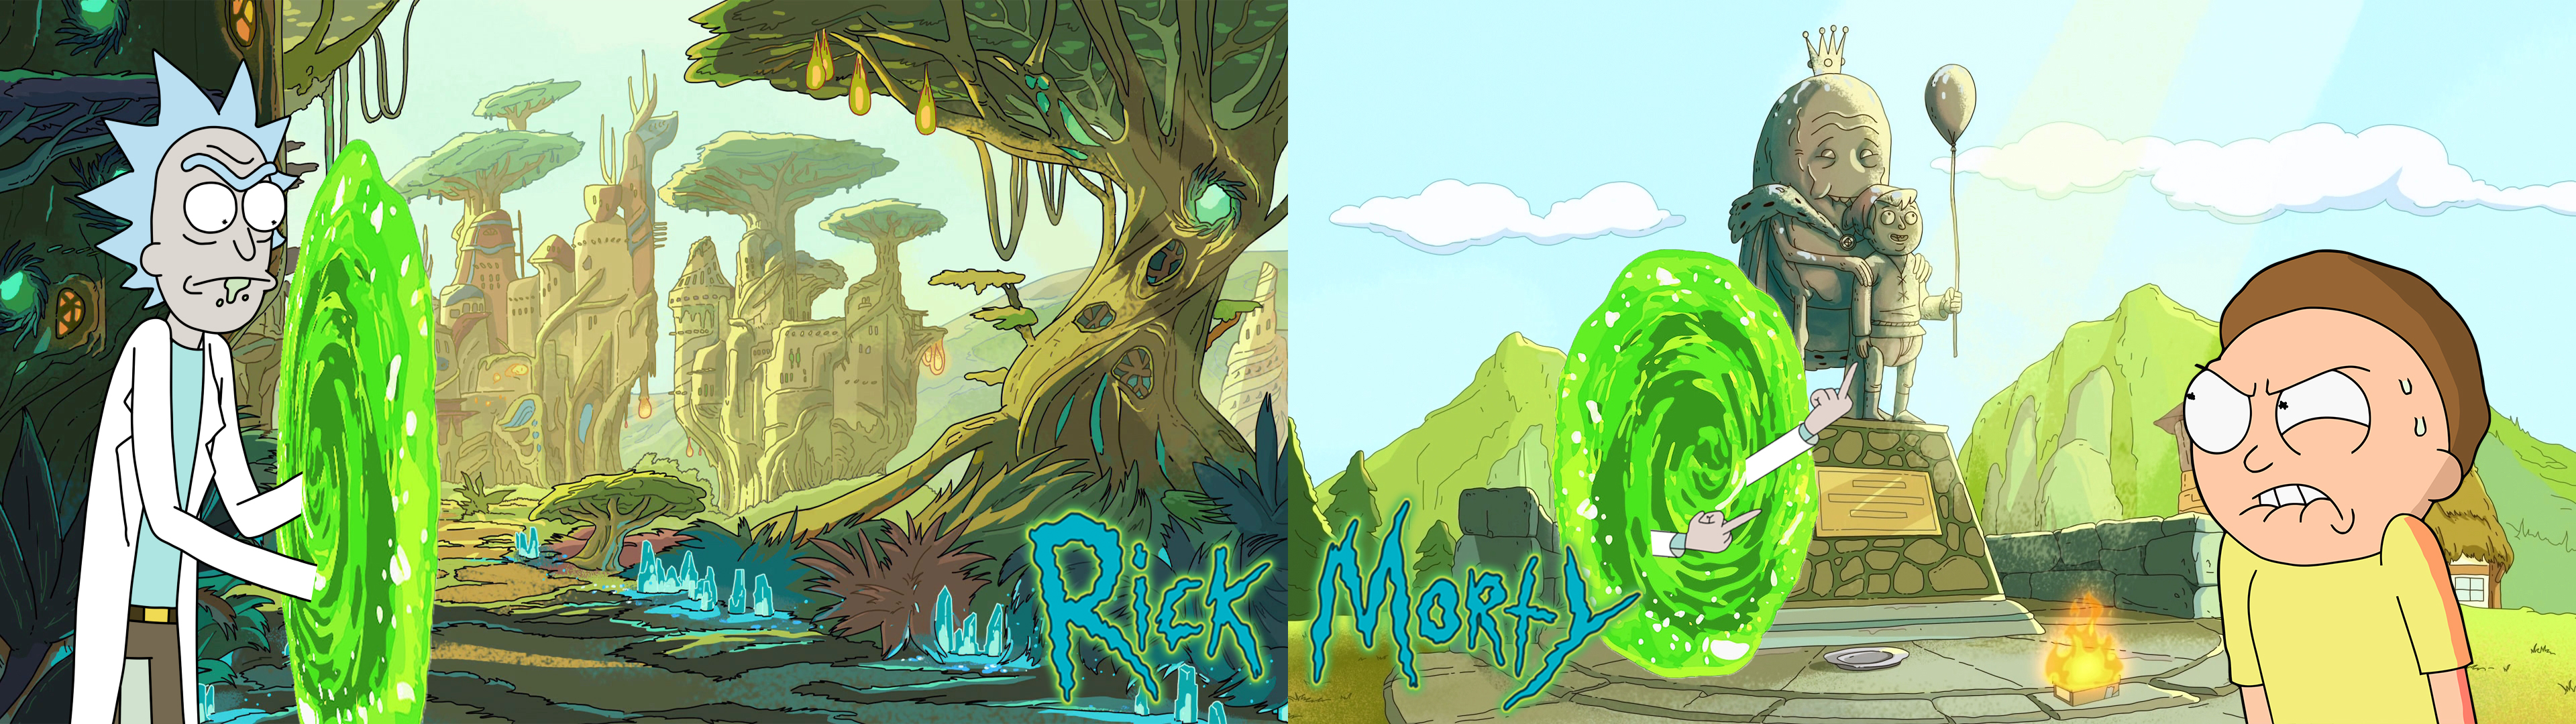 Rick and Morty, Dual monitors, Dual display Wallpaper